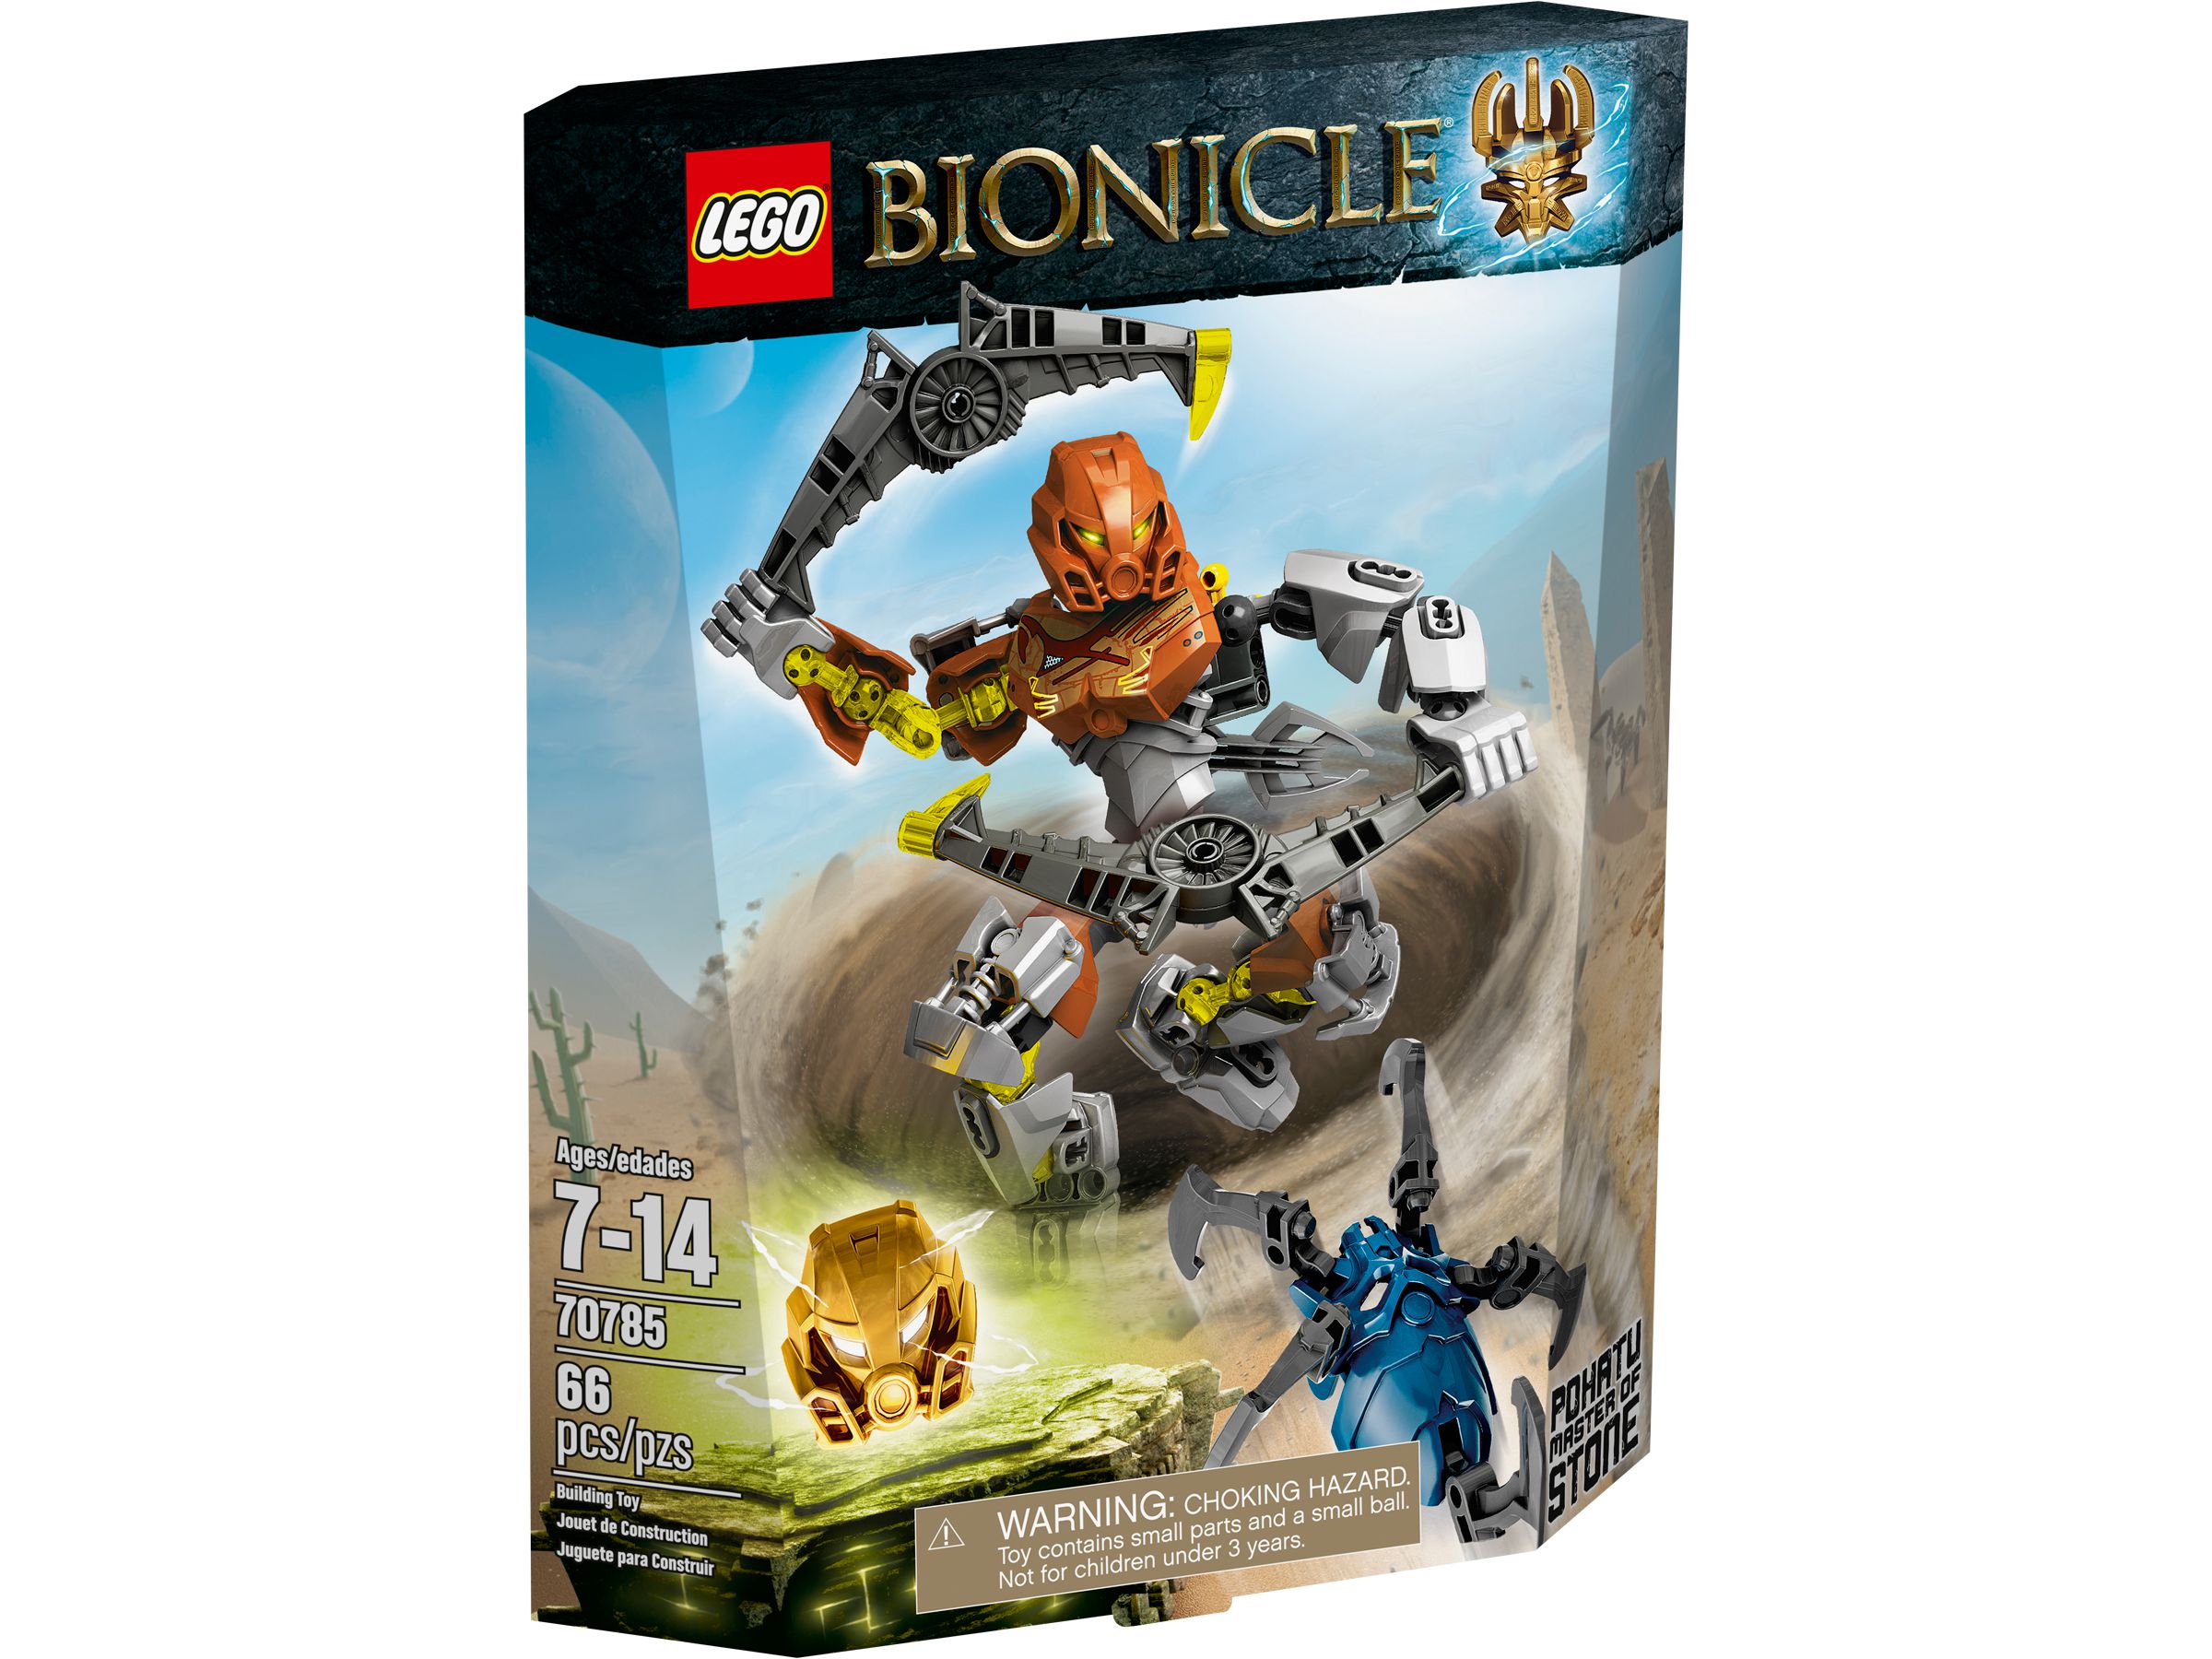 LEGO Bionicle 70785 Pohatu – Meister des Steins LEGO_70785_alt1.jpg